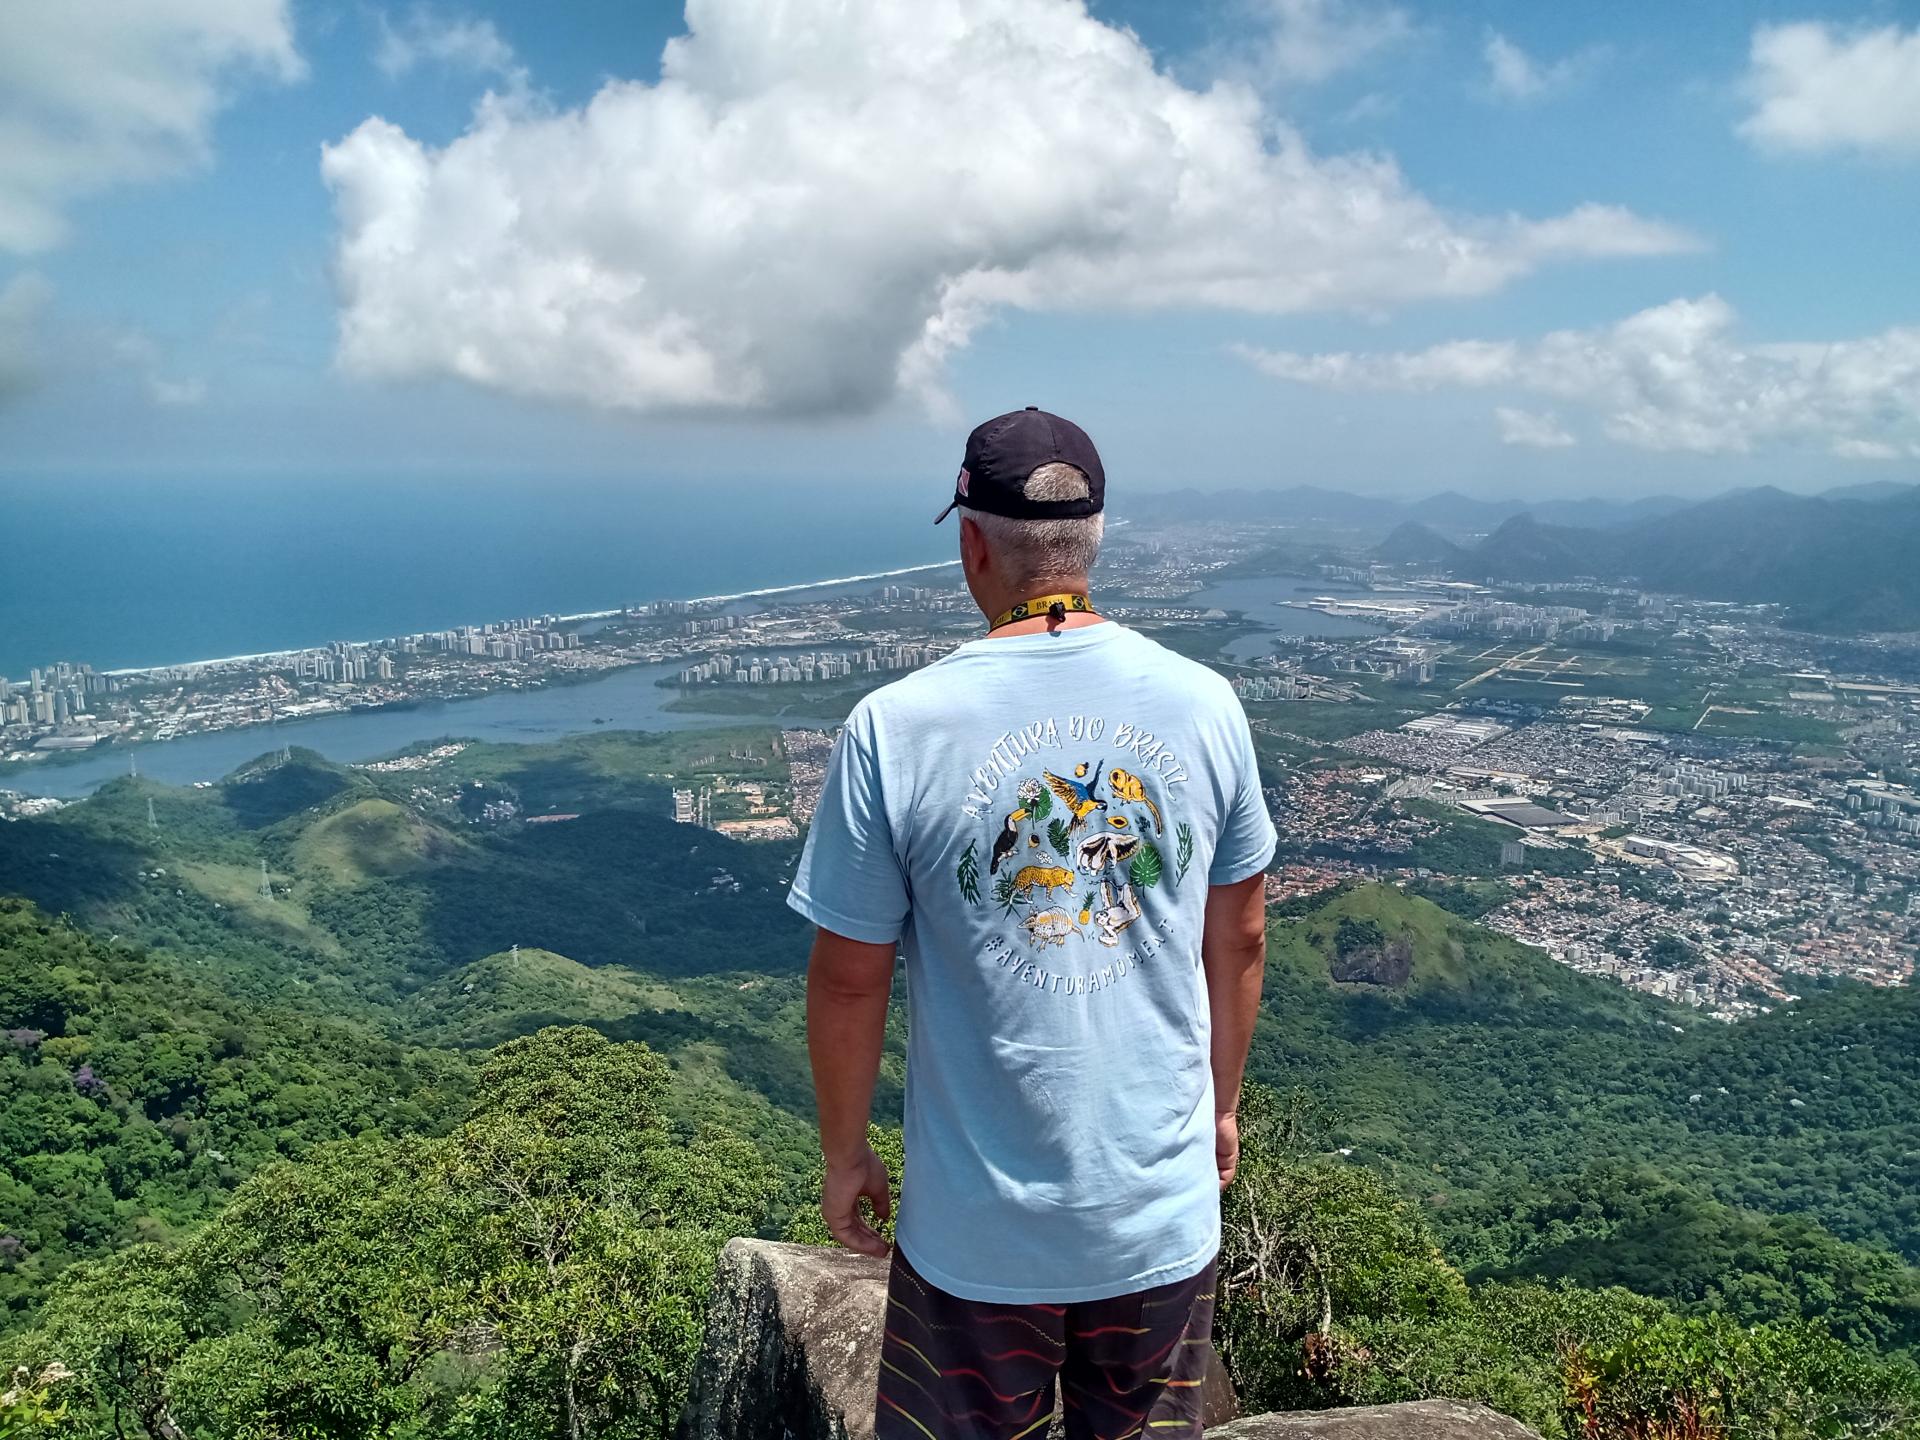 Hortas Cariocas: View over the green Rio de Janeiro